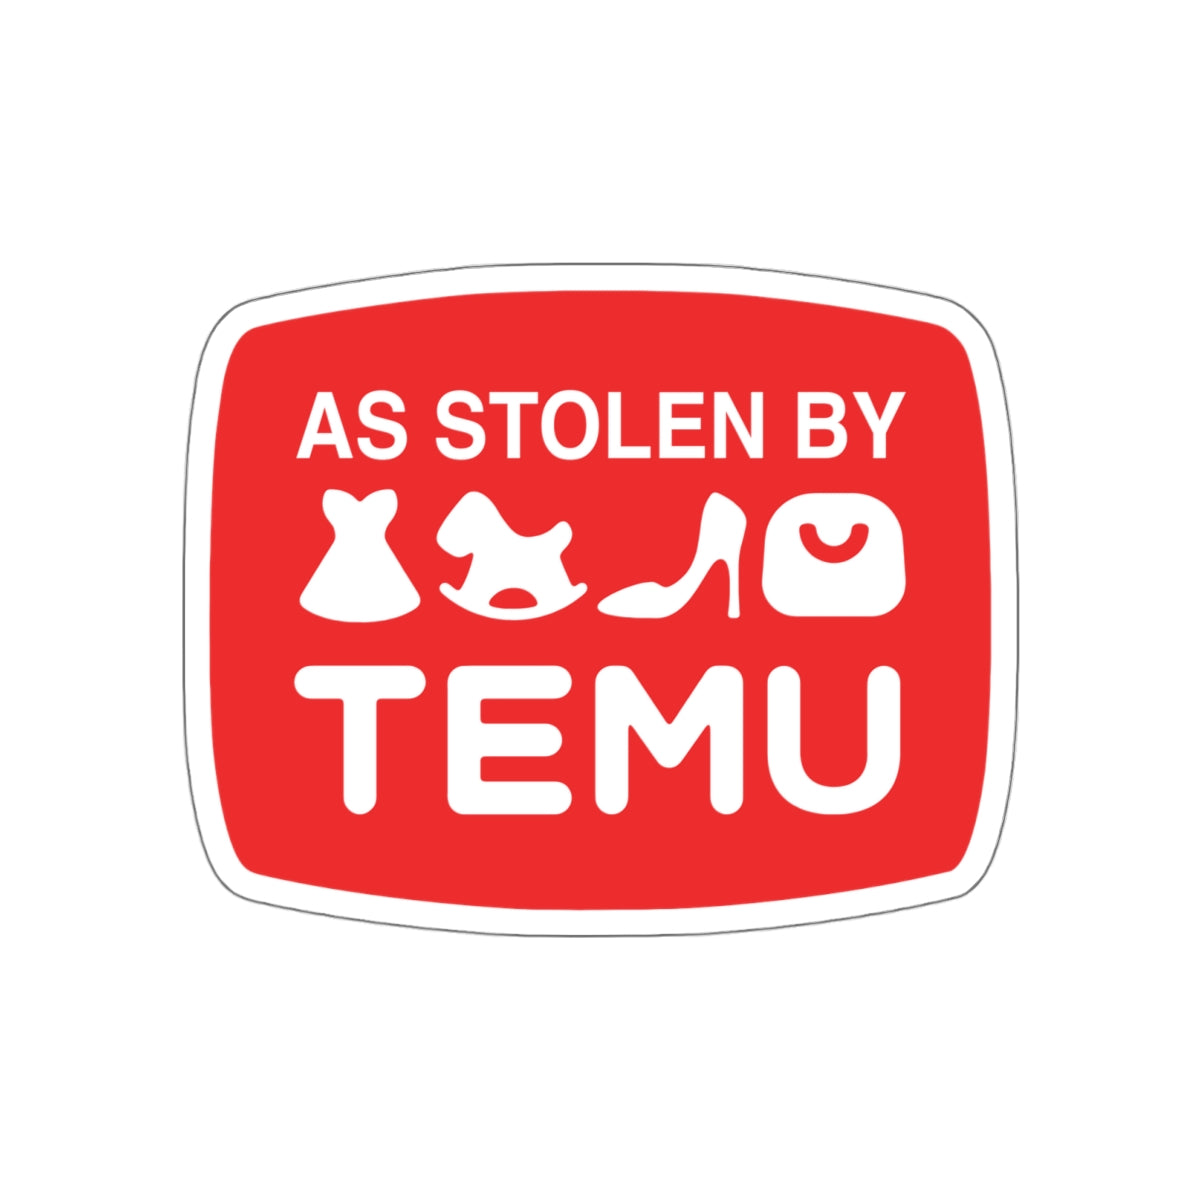 As Stolen By Temu vinyl sticker